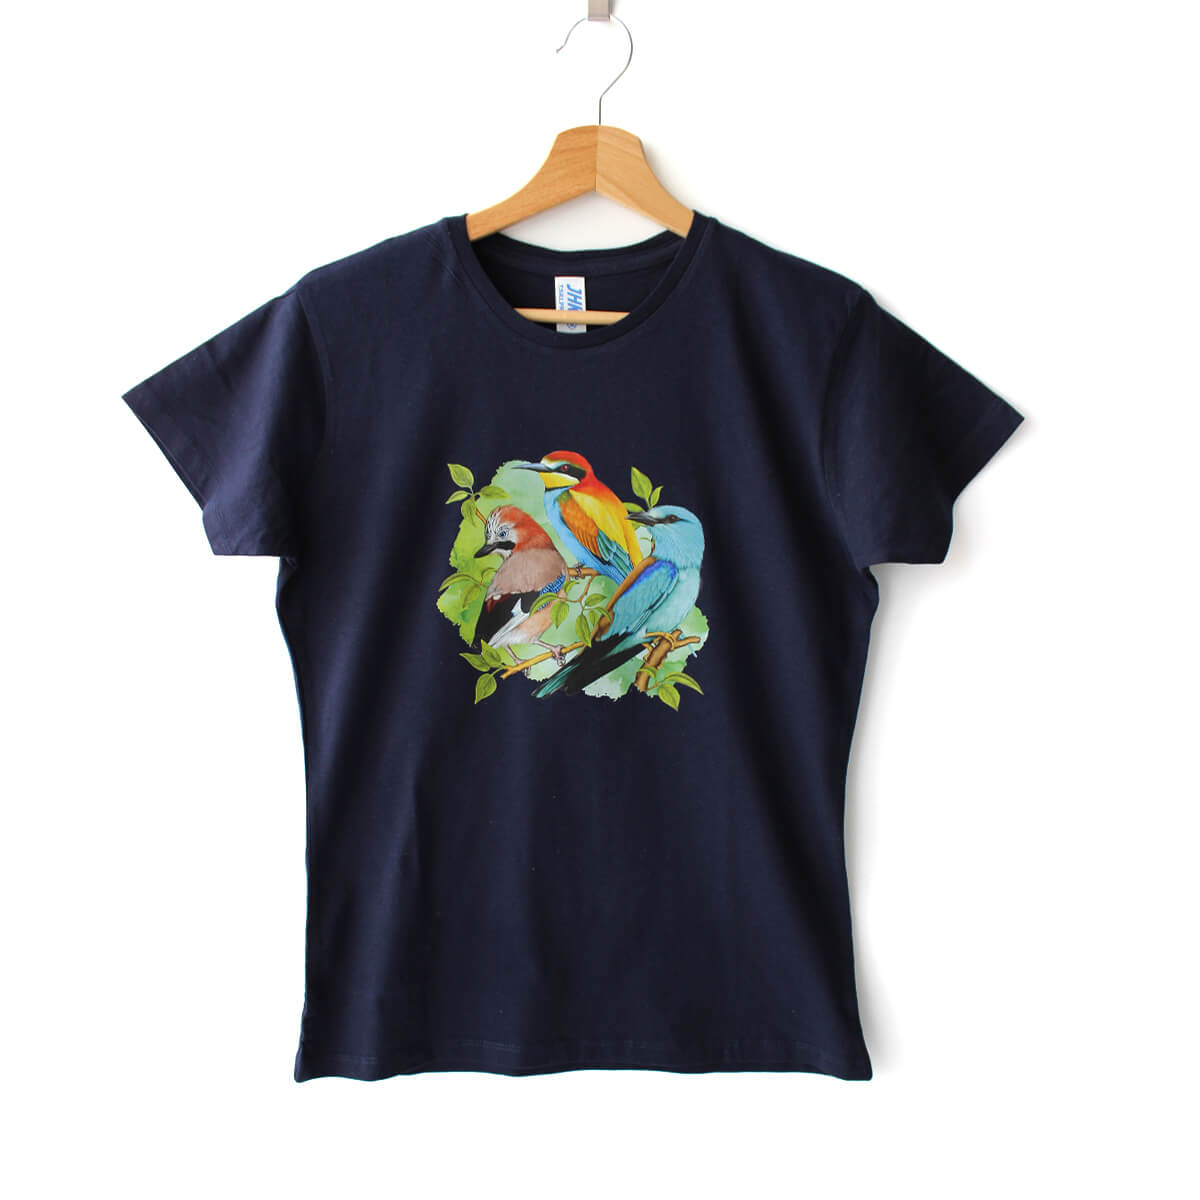 Bawełniana koszulka damska z z ilustracją 3 ptaków: sójka, żołna, kraska